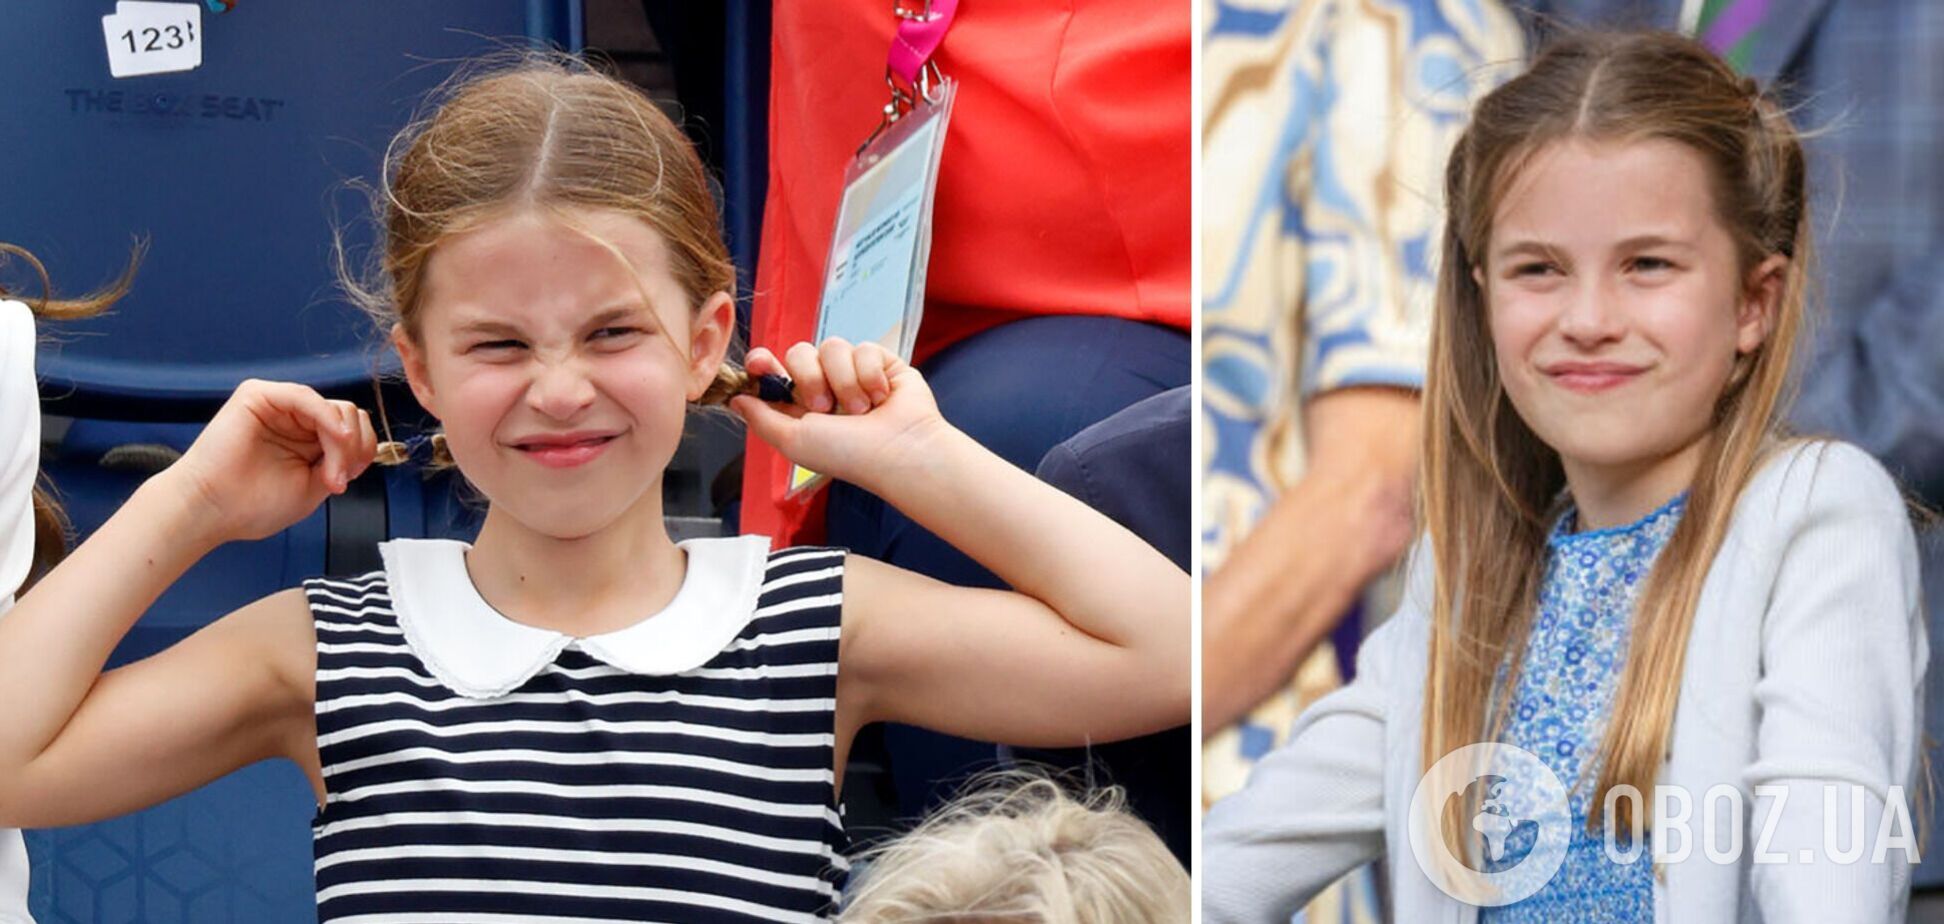 Кейт Миддлтон опубликовала долгожданное фото принцессы Шарлотты в день ее рождения